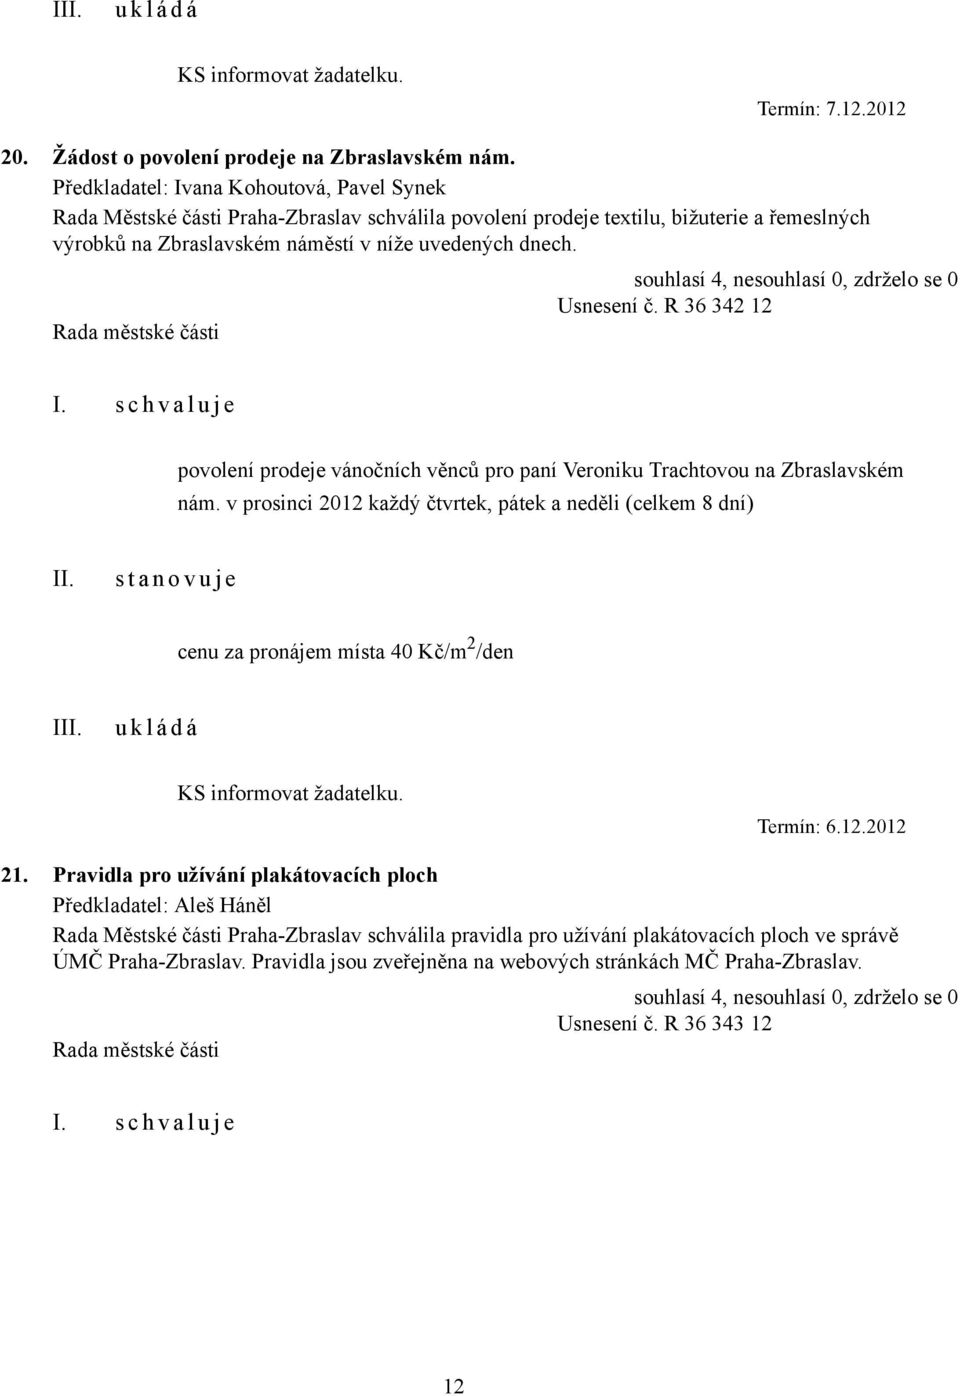 Usnesení č. R 36 342 12 povolení prodeje vánočních věnců pro paní Veroniku Trachtovou na Zbraslavském nám.